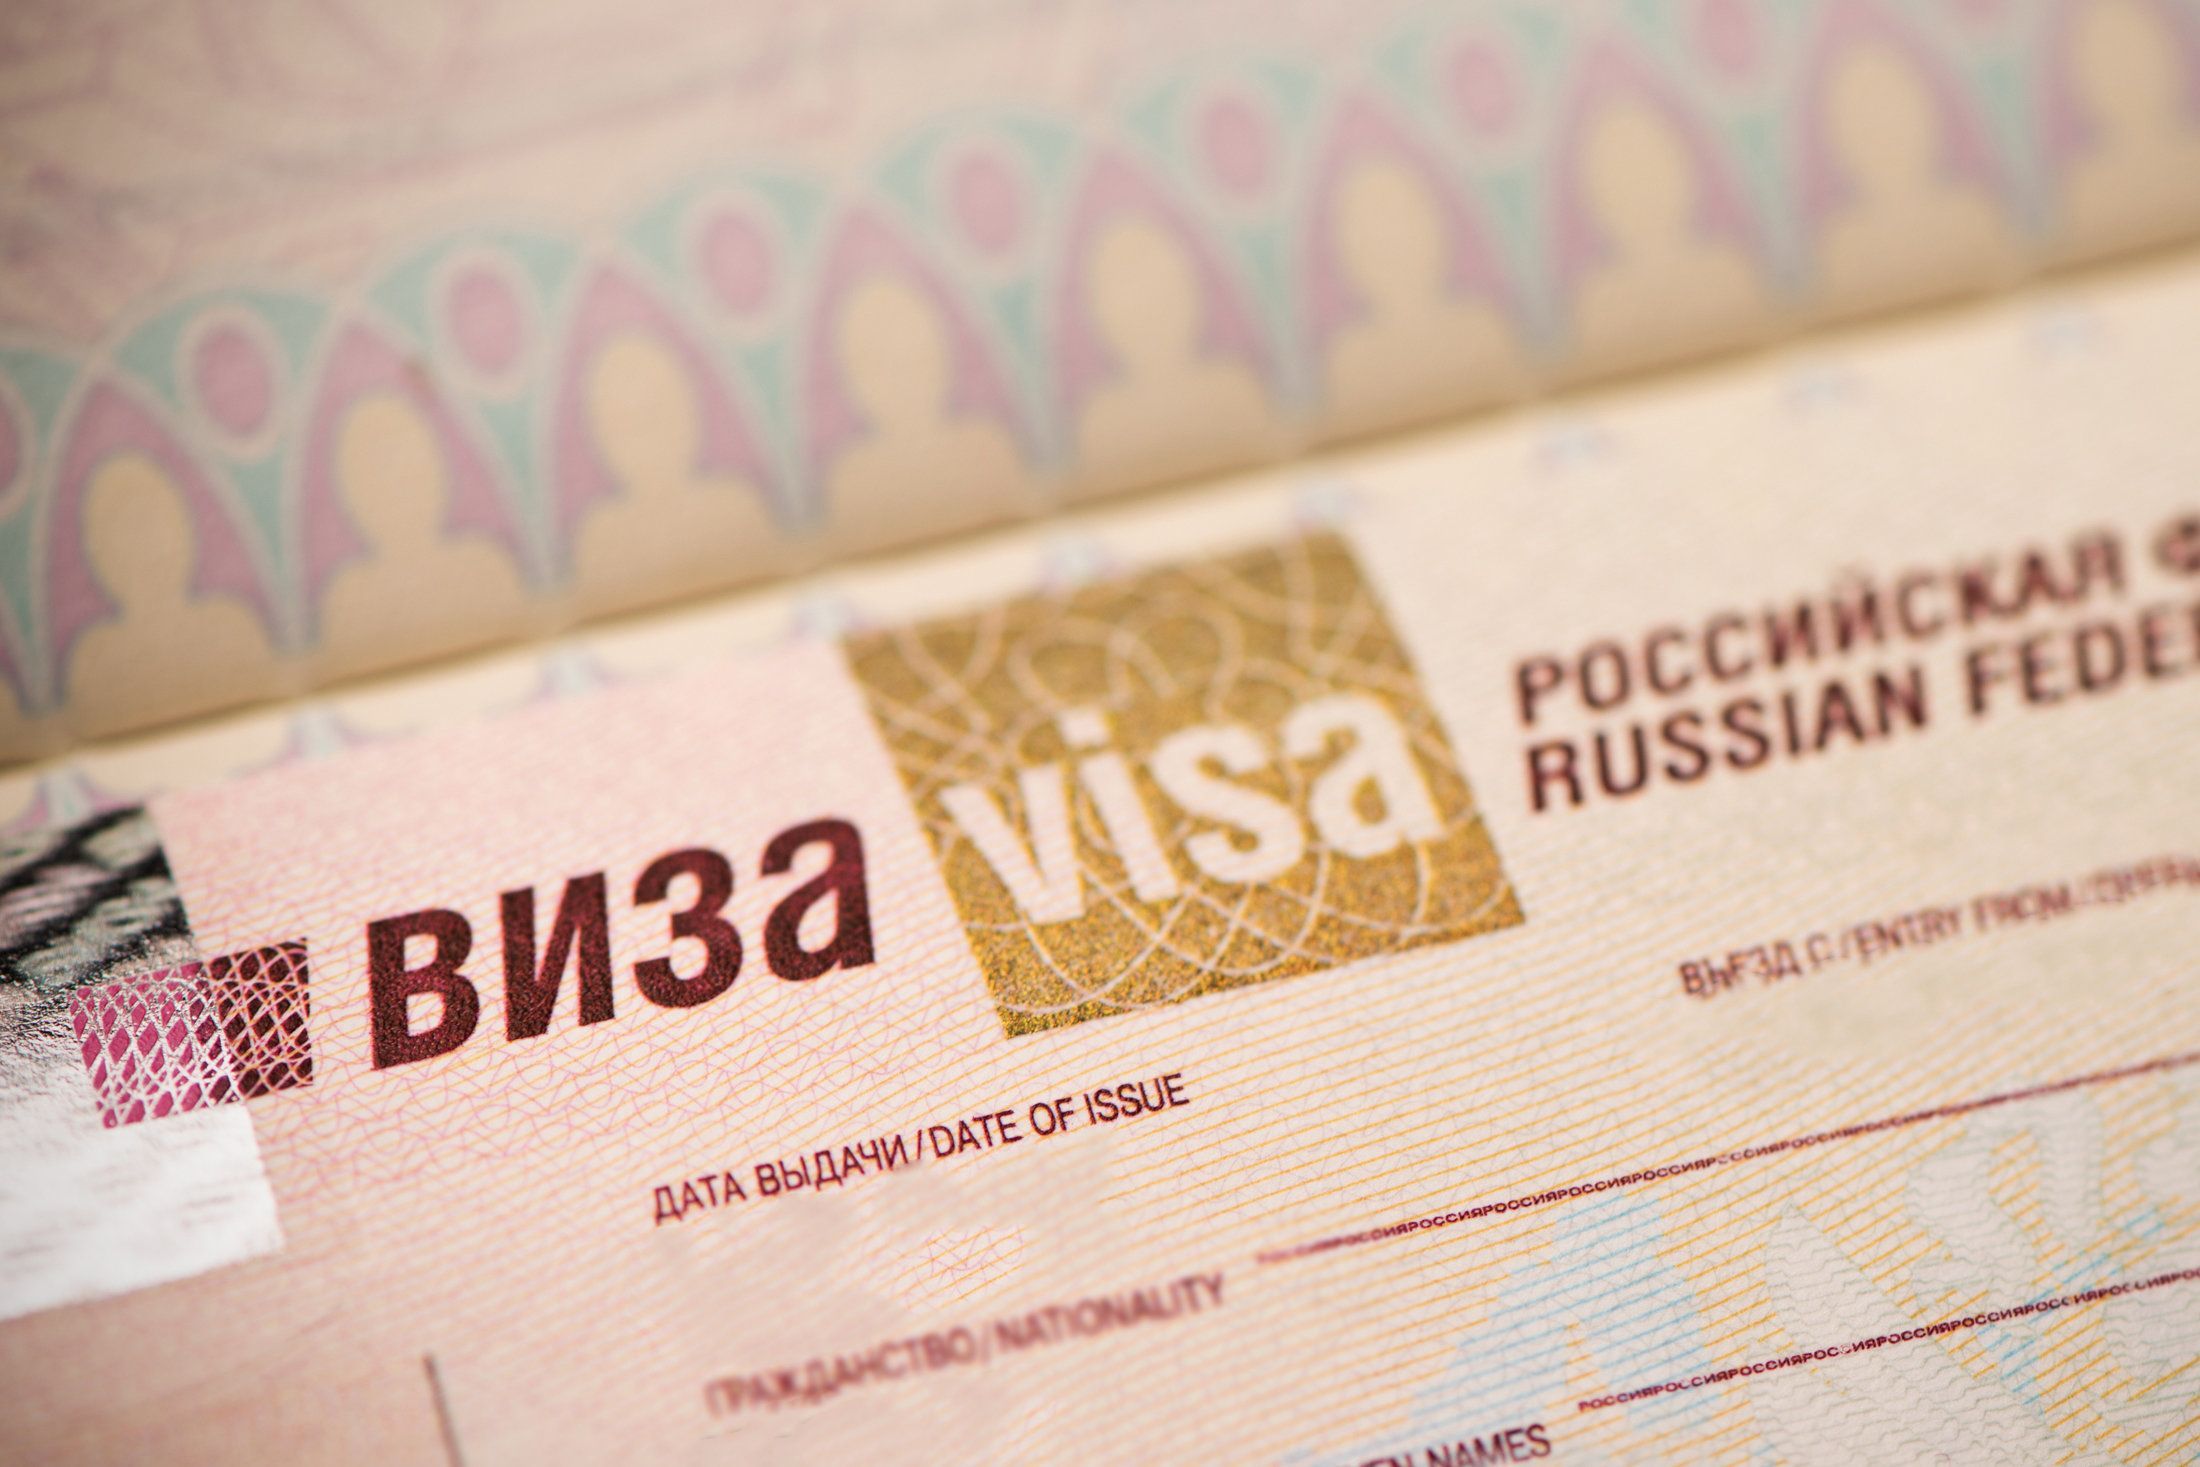 Venäjälle e-viisumeilla matkustavia palvelevien raja-asemien määrä kasvoi kahdella. Molemmat raja-asemat sijaitsevat Leningradin alueella Venäjän ja Suomen rajalla. Kuva: iStock.com